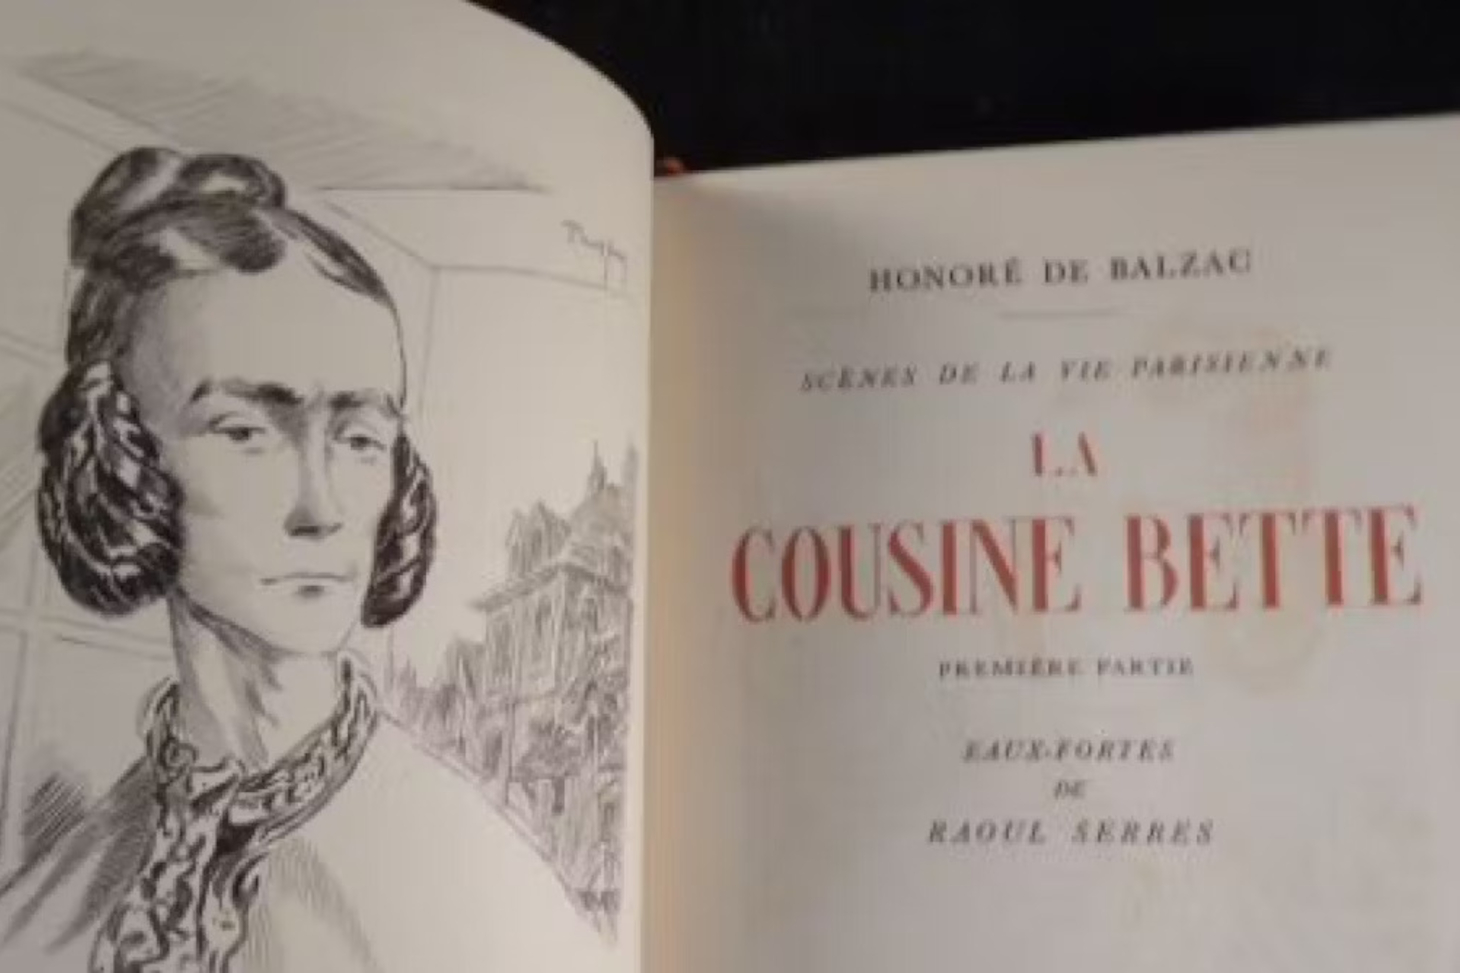 Dans cette édition illustrée de La cousine Bette (1948), l'héroïne célibataire a les traits durs, la mine sévère et triste. Editions Albert Guillot, Paris 1948.